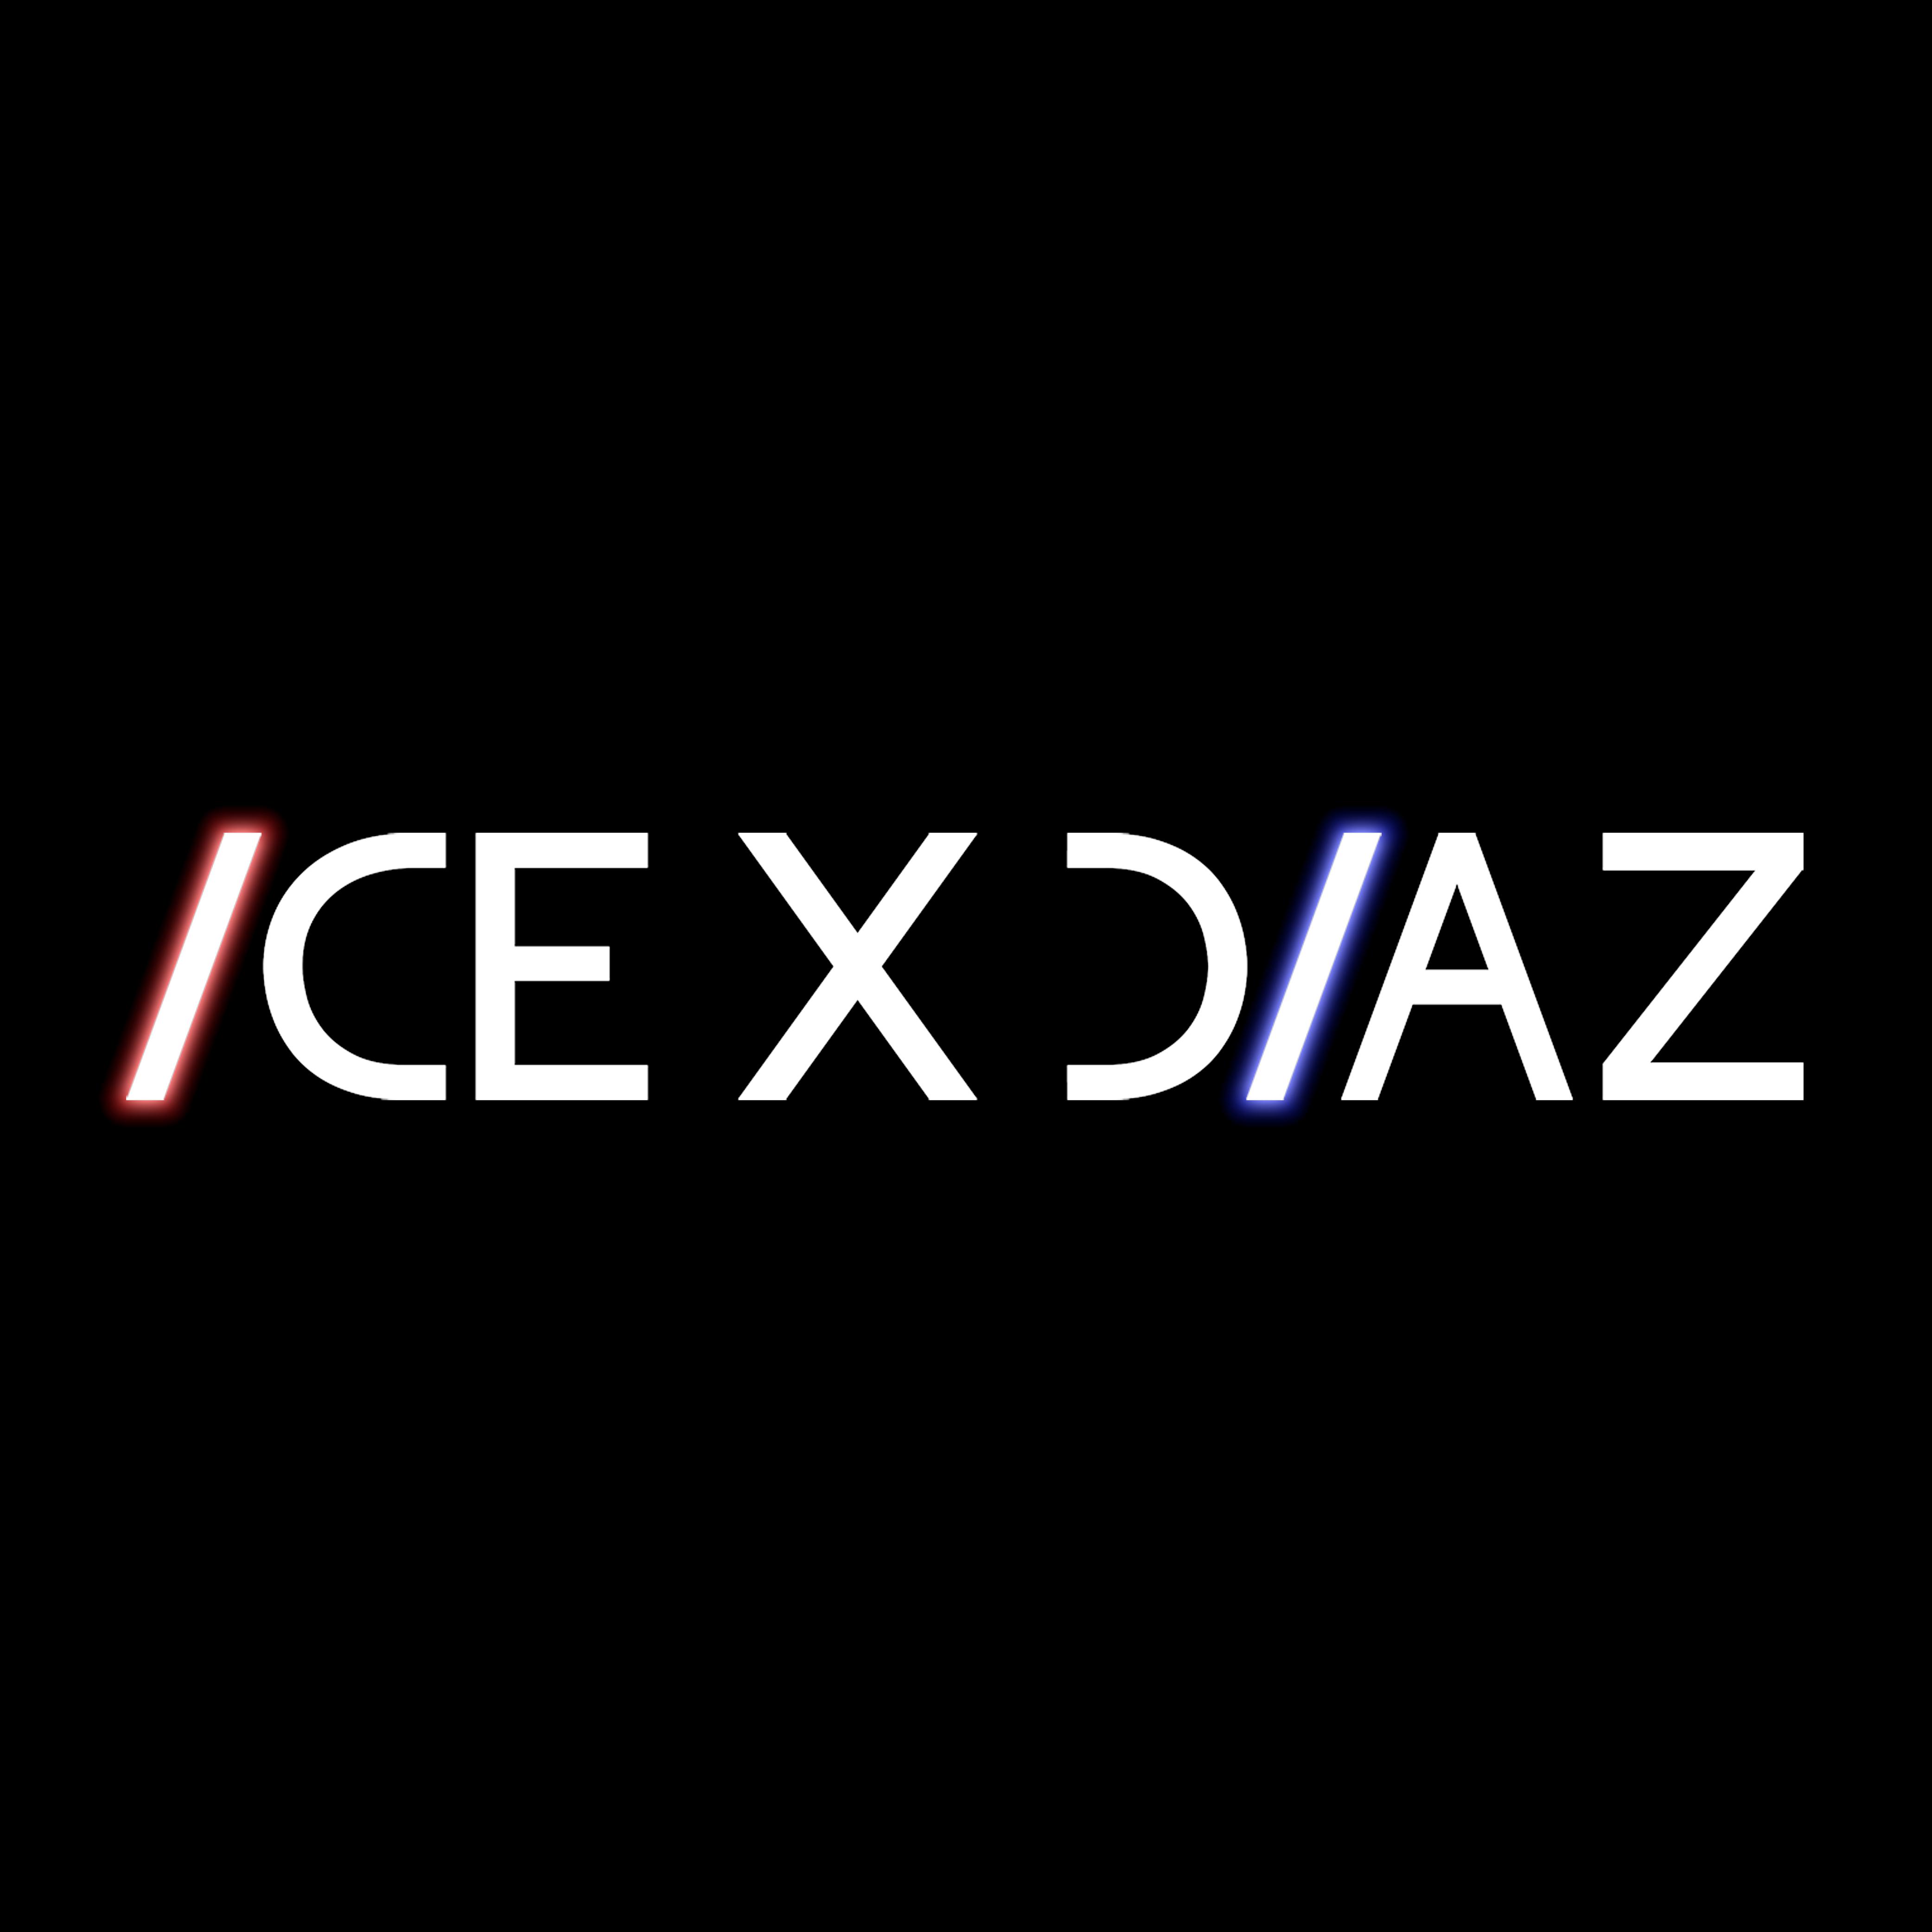 Ice X Diaz